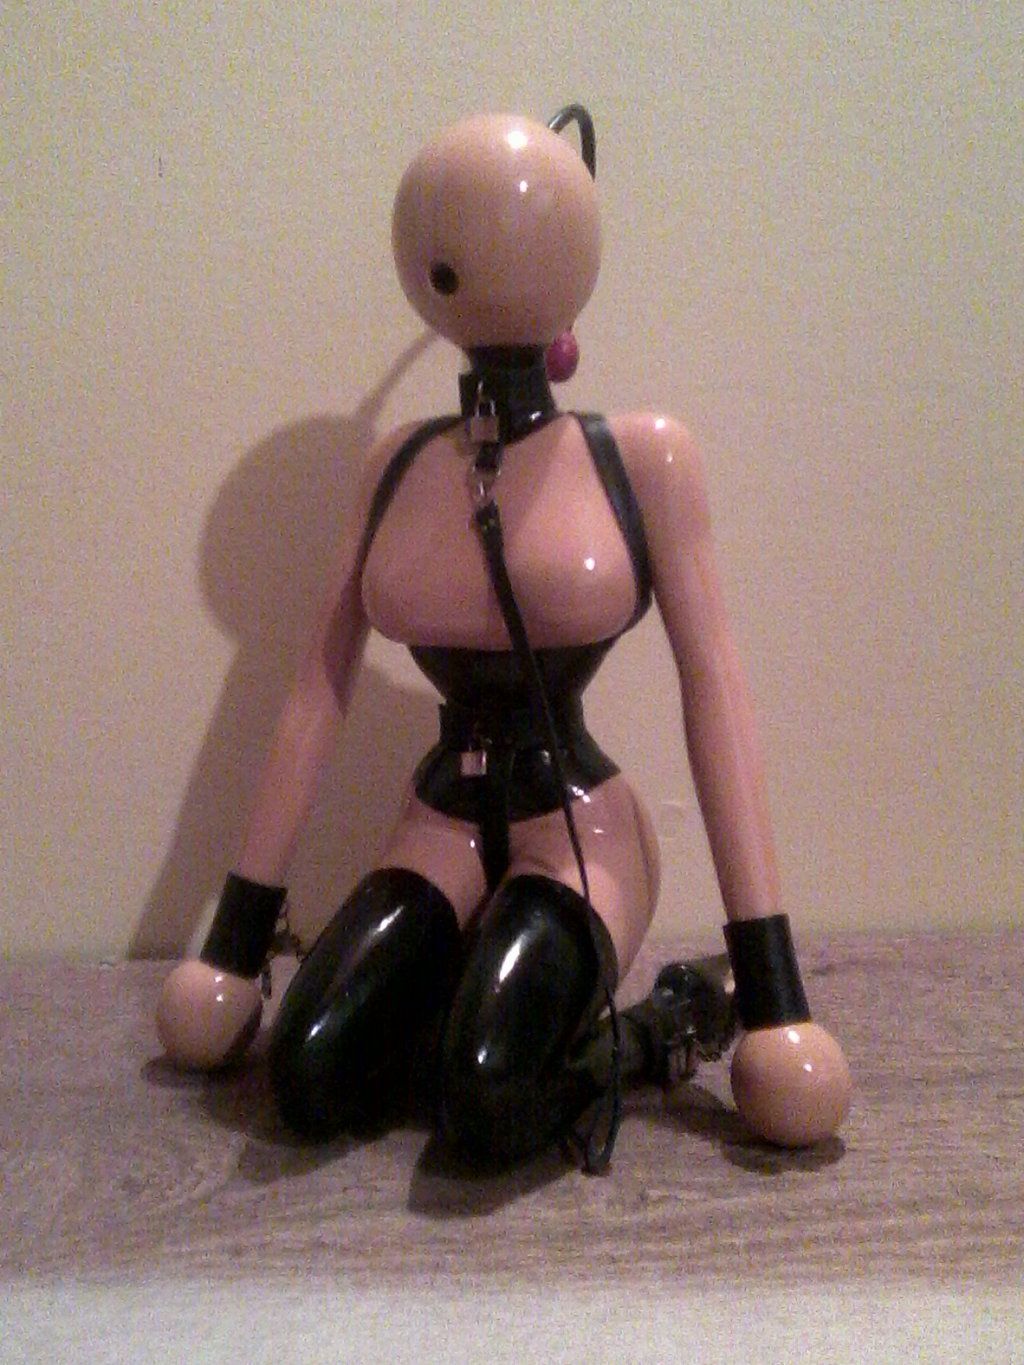 Shield reccomend s made rubber bondage dolls